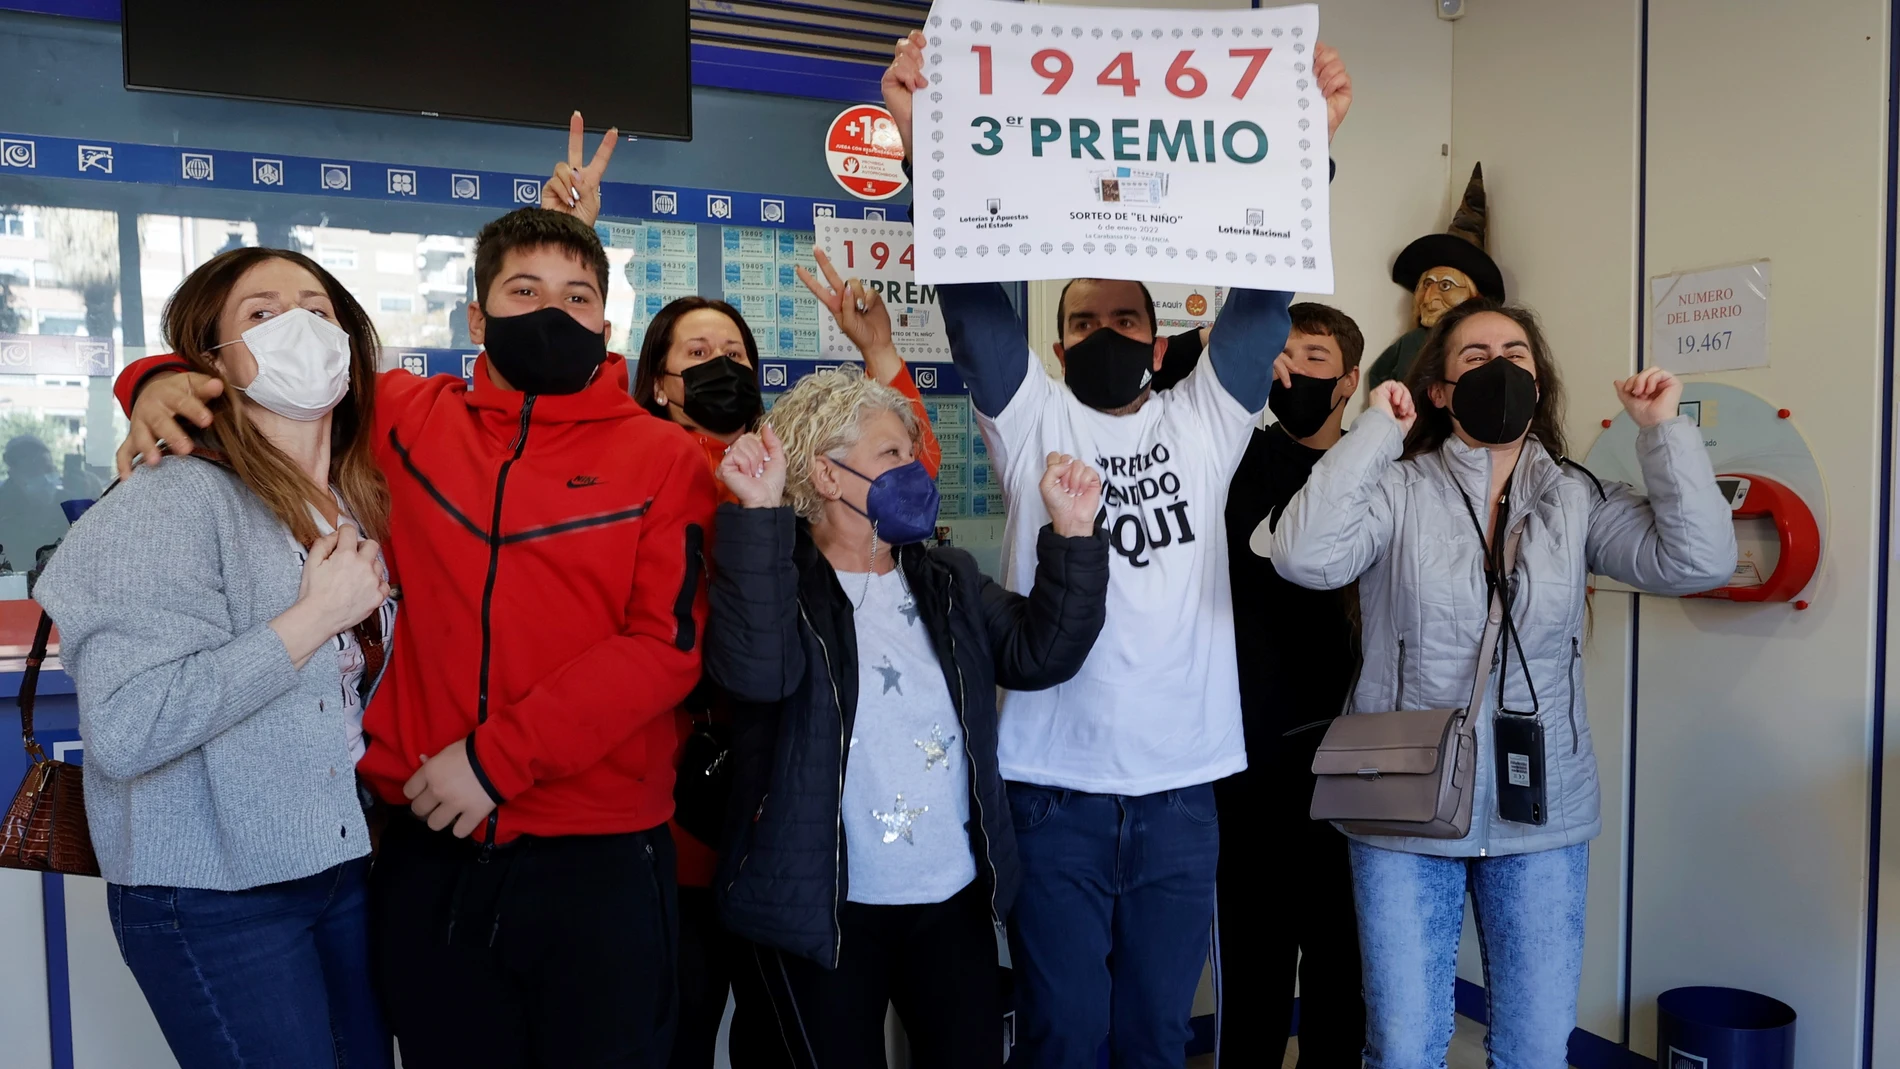 Agraciados con el número 19467 celebran el tercer premio del sorteo de la Lotería del Niño en una administración en Valencia